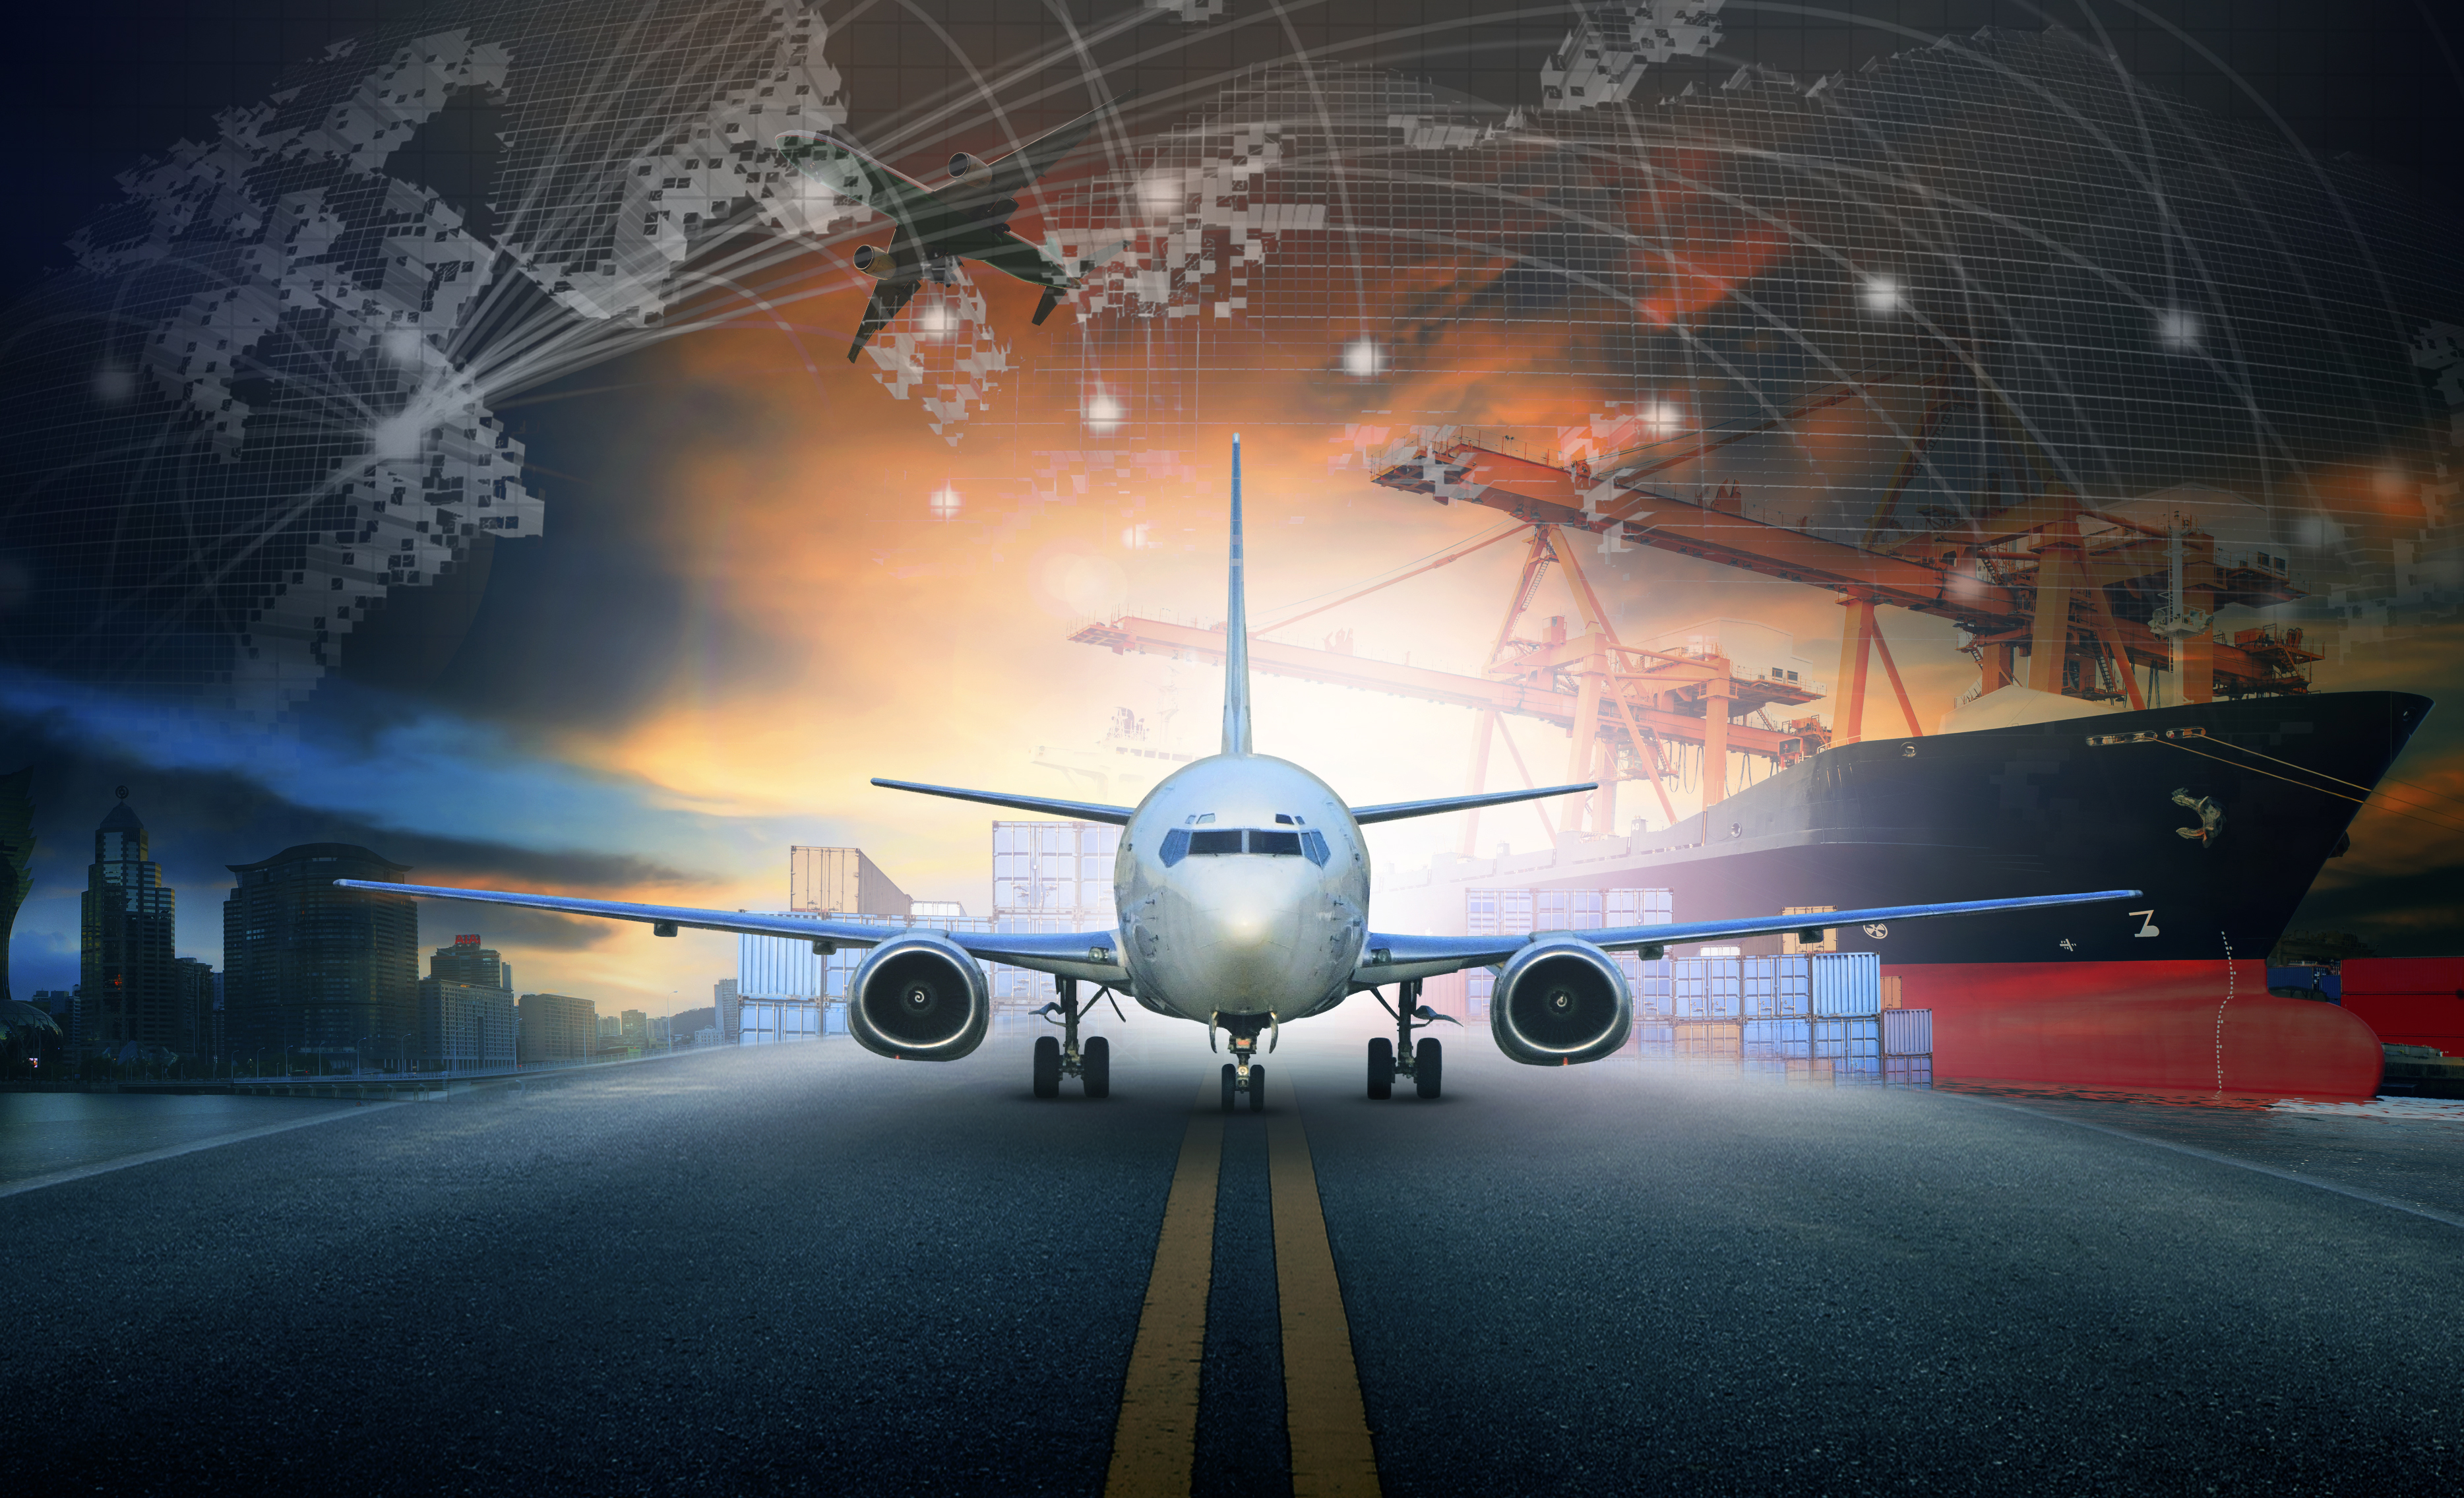 hajórakodó konténer import - export móló és légi teherszállító repülőgép megközelítésben a repülőtéri használatban a szállítási és árufuvarozási logisztikai üzleti háttérben